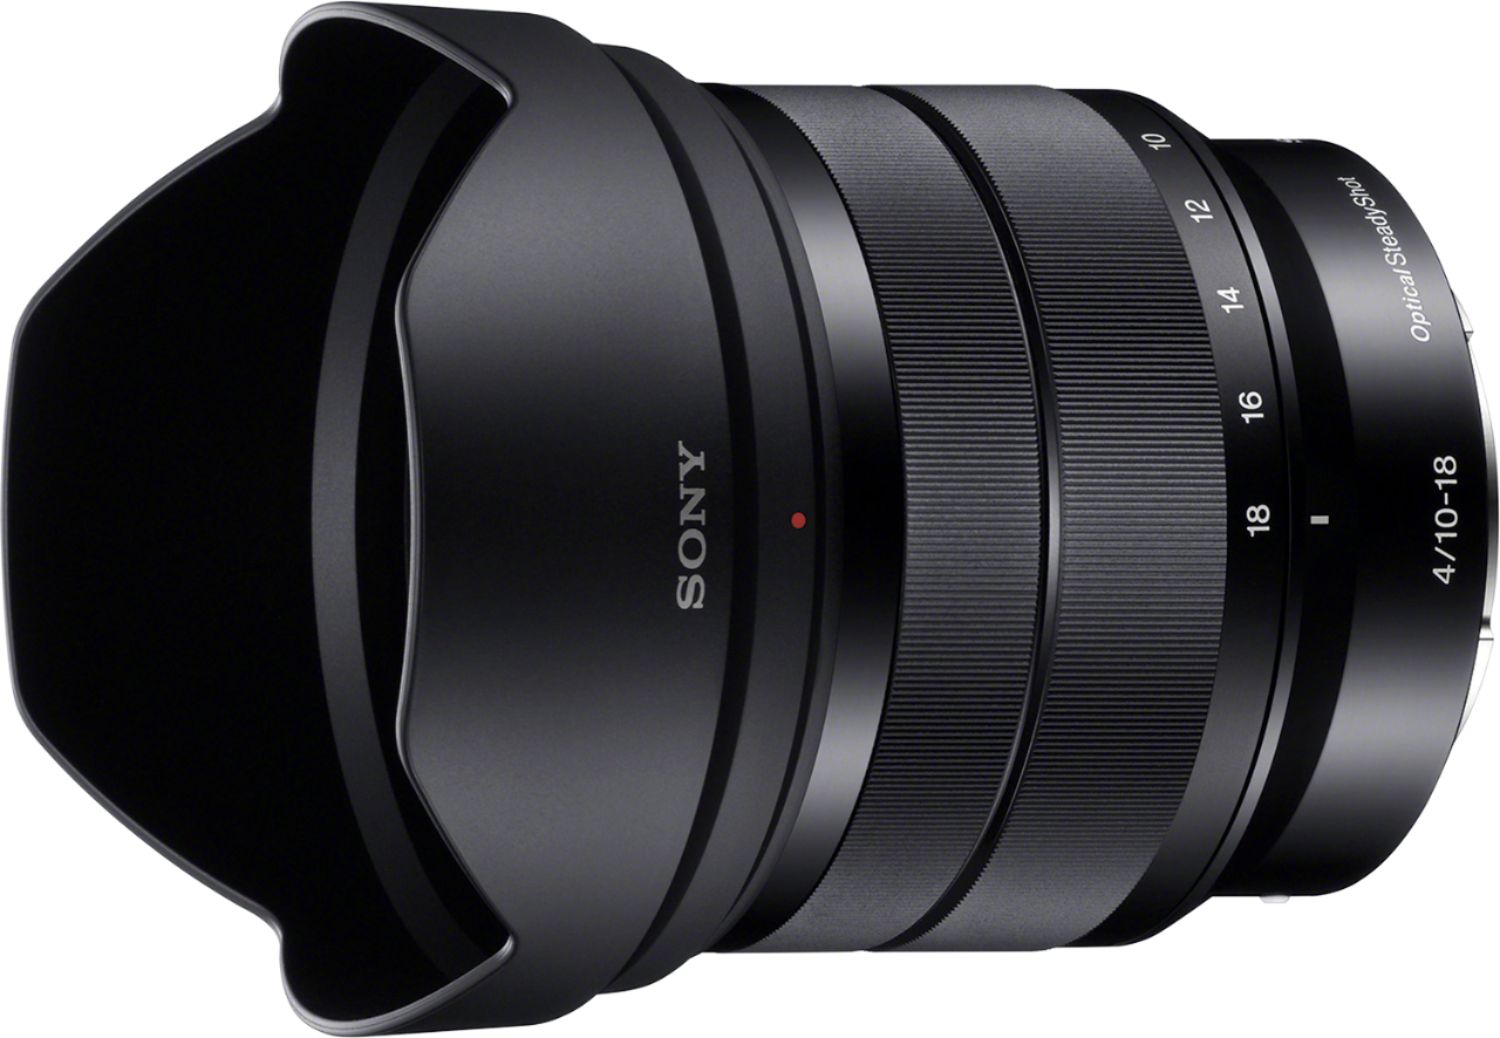 Left View: Fujinon XF 10-24mm f/4 R OIS Lens for Most Fujifilm X-Series Digital Cameras - Black